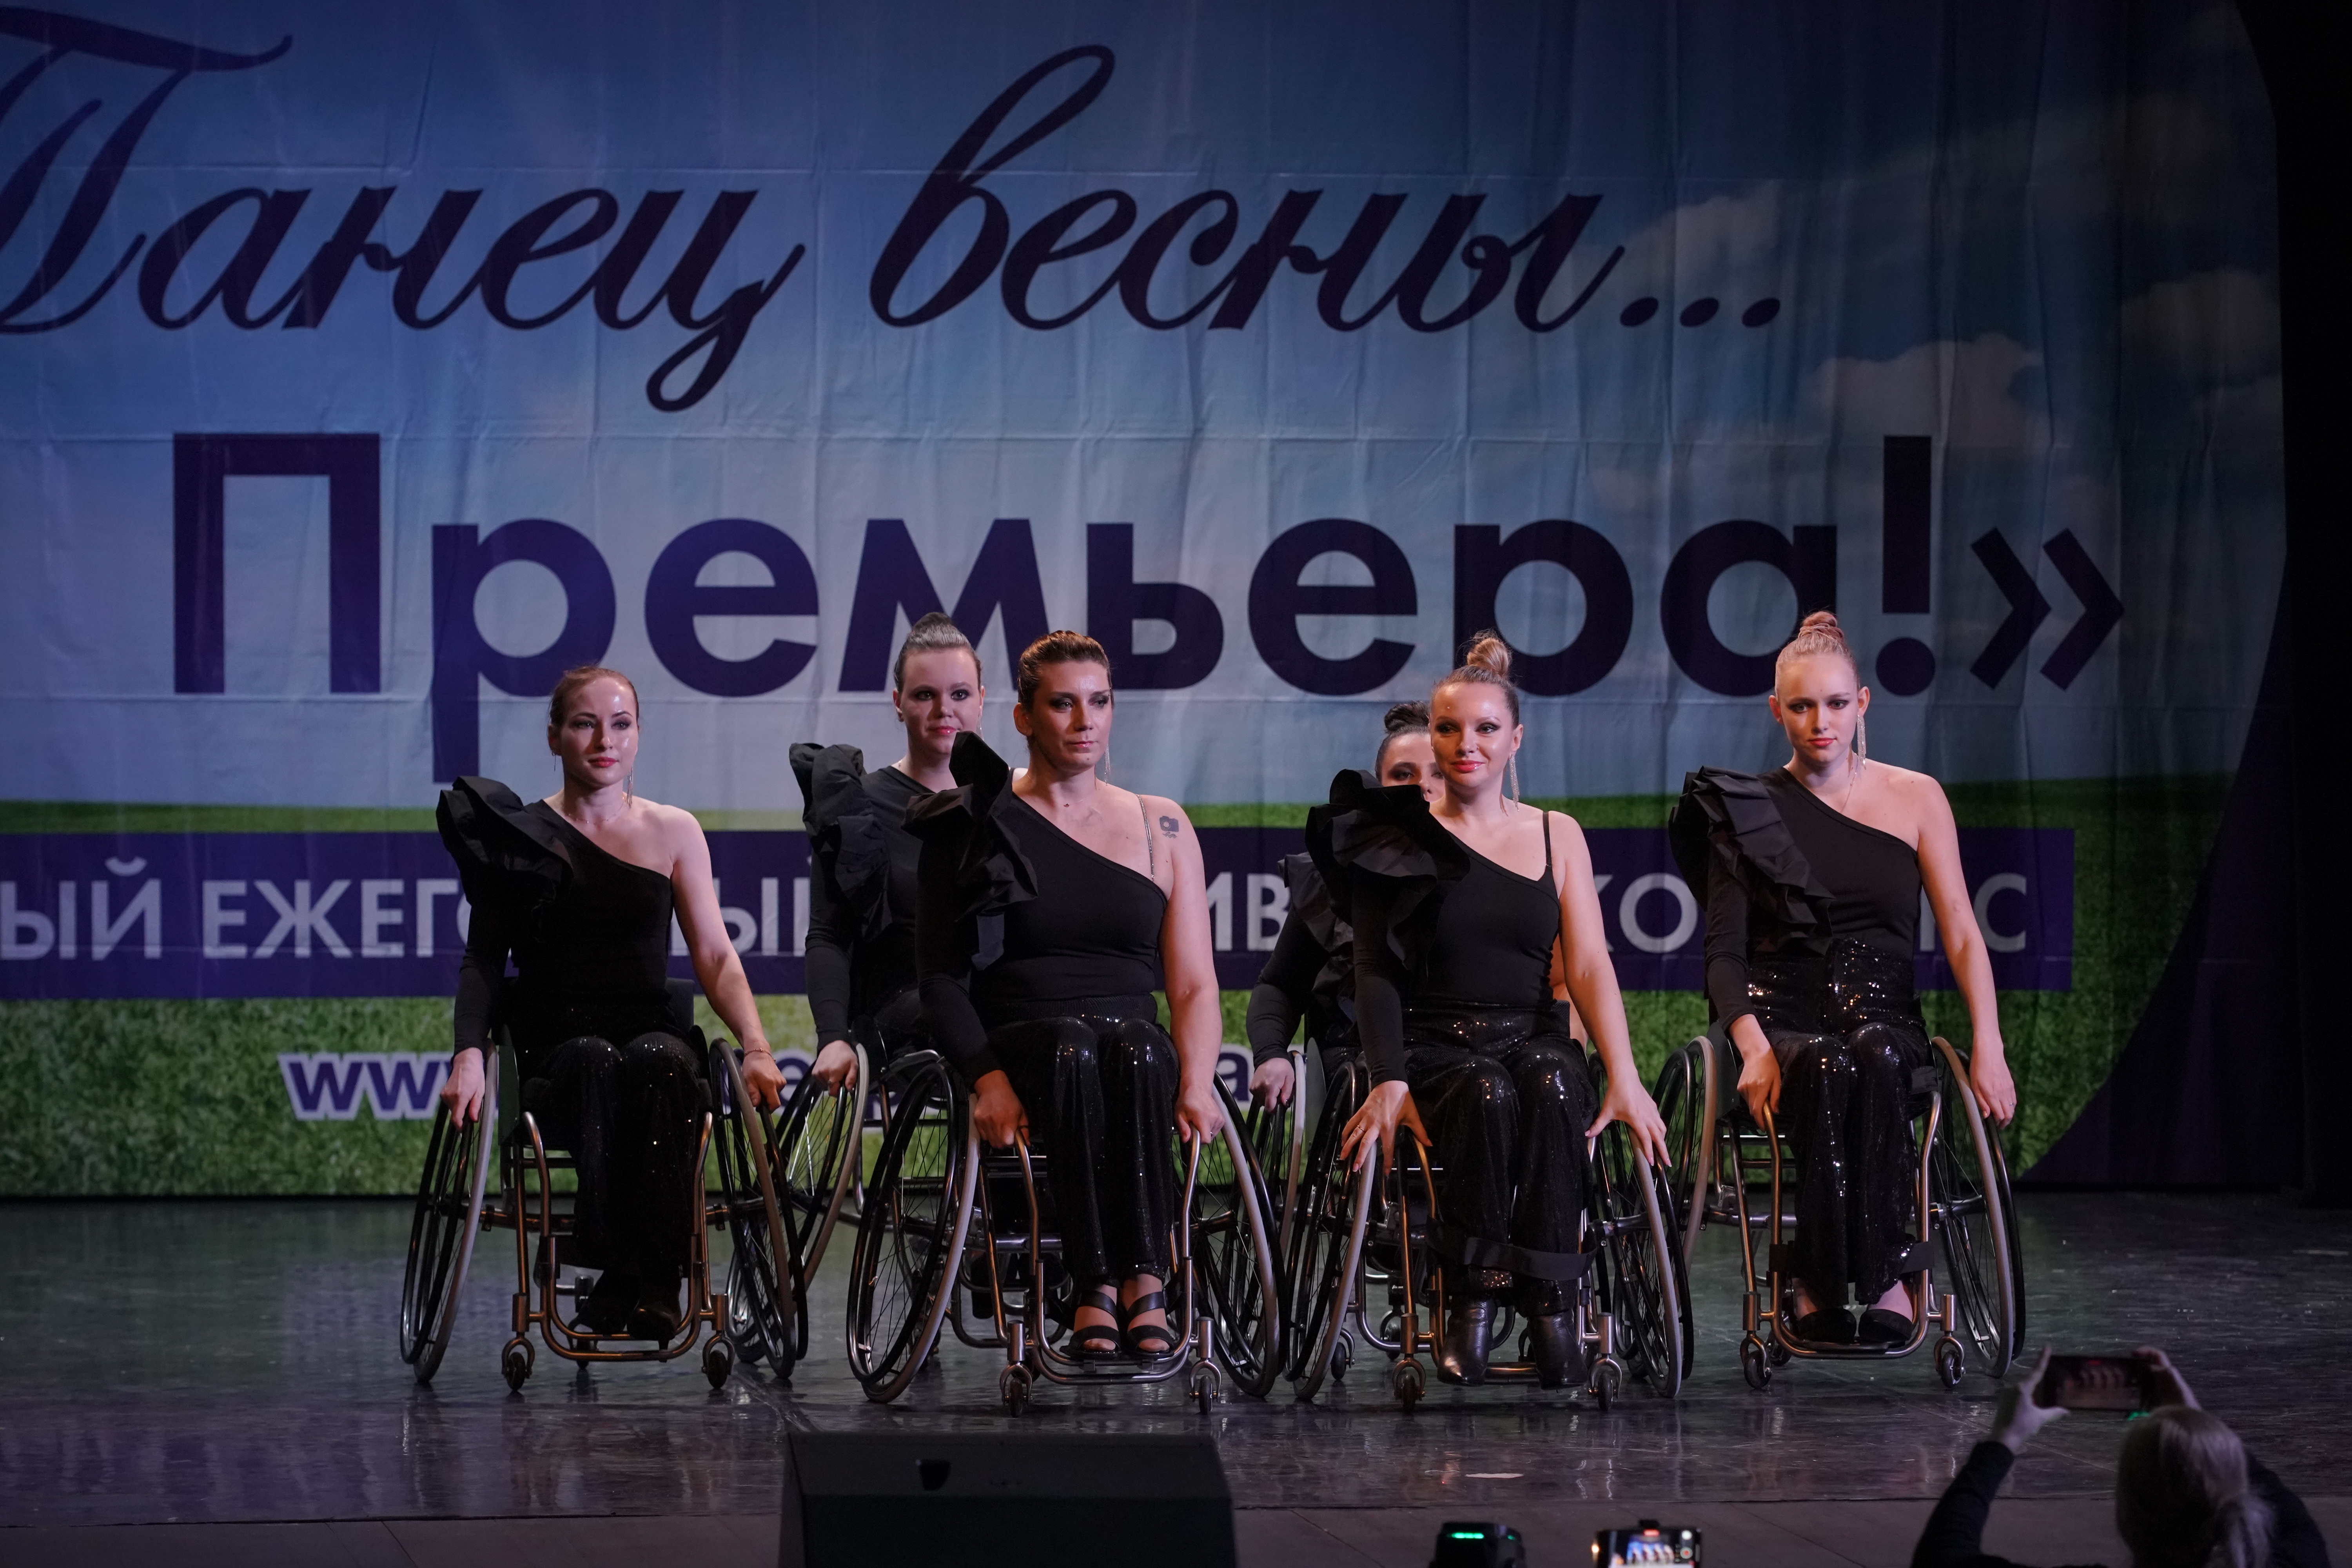 XII всероссийский ежегодный фестиваль-конкурс "Танец Весны... Премьера!" в городе Мытищи.